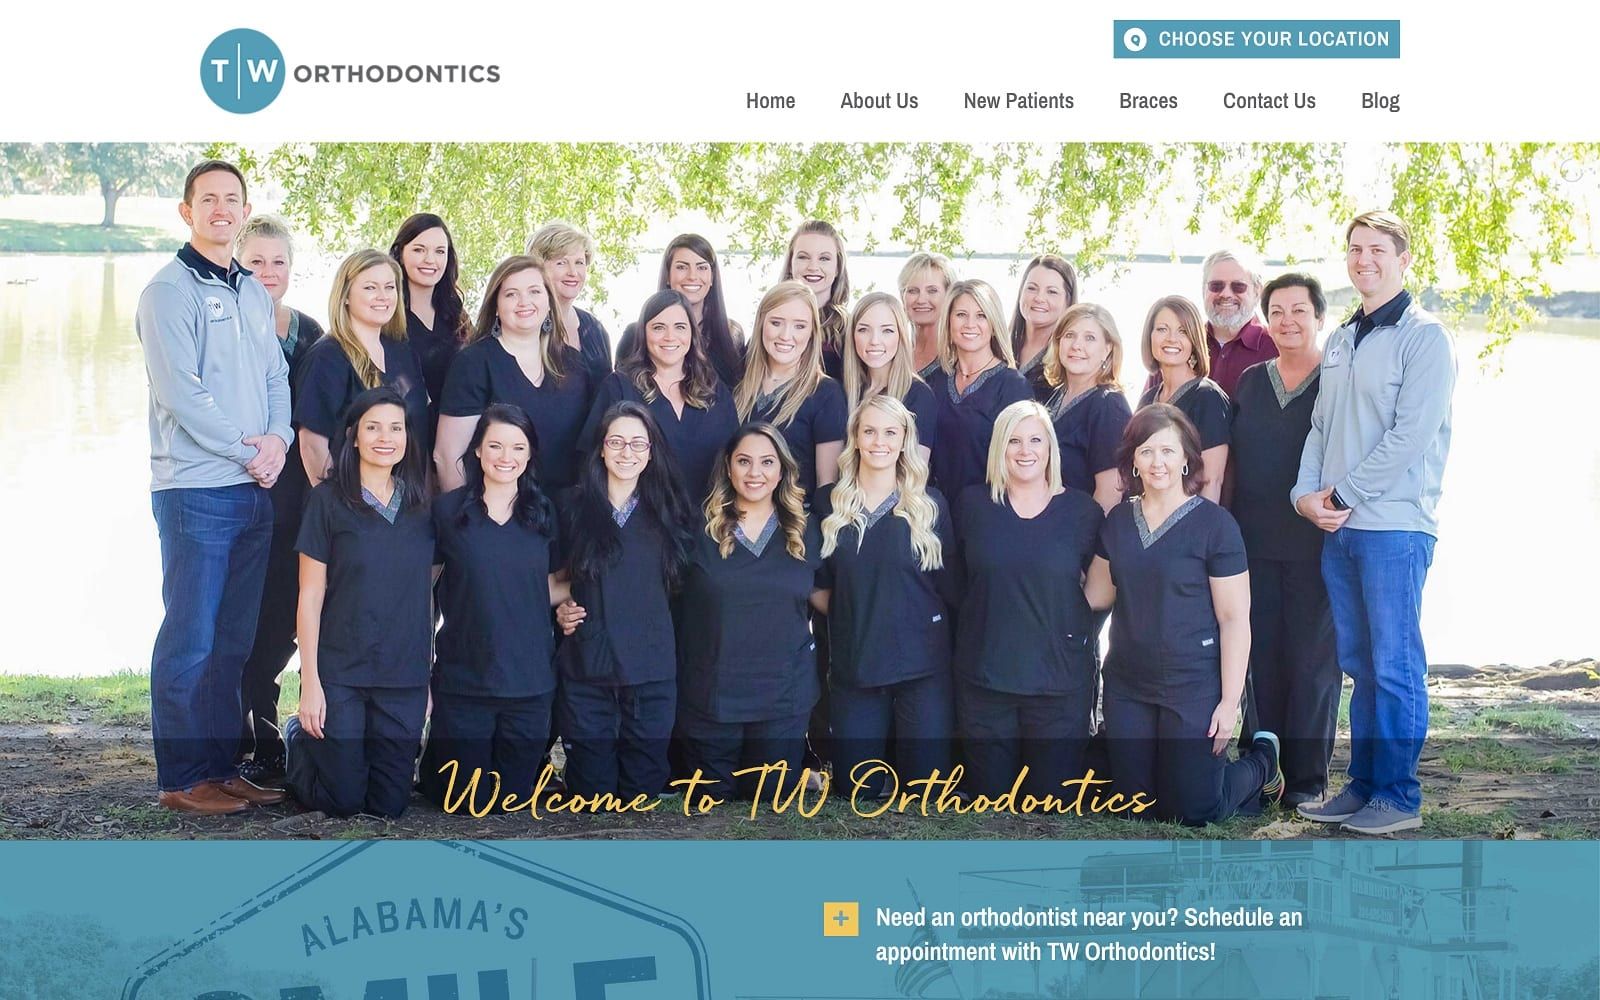 The screenshot of tw orthodontics - montgomery twortho. Com website